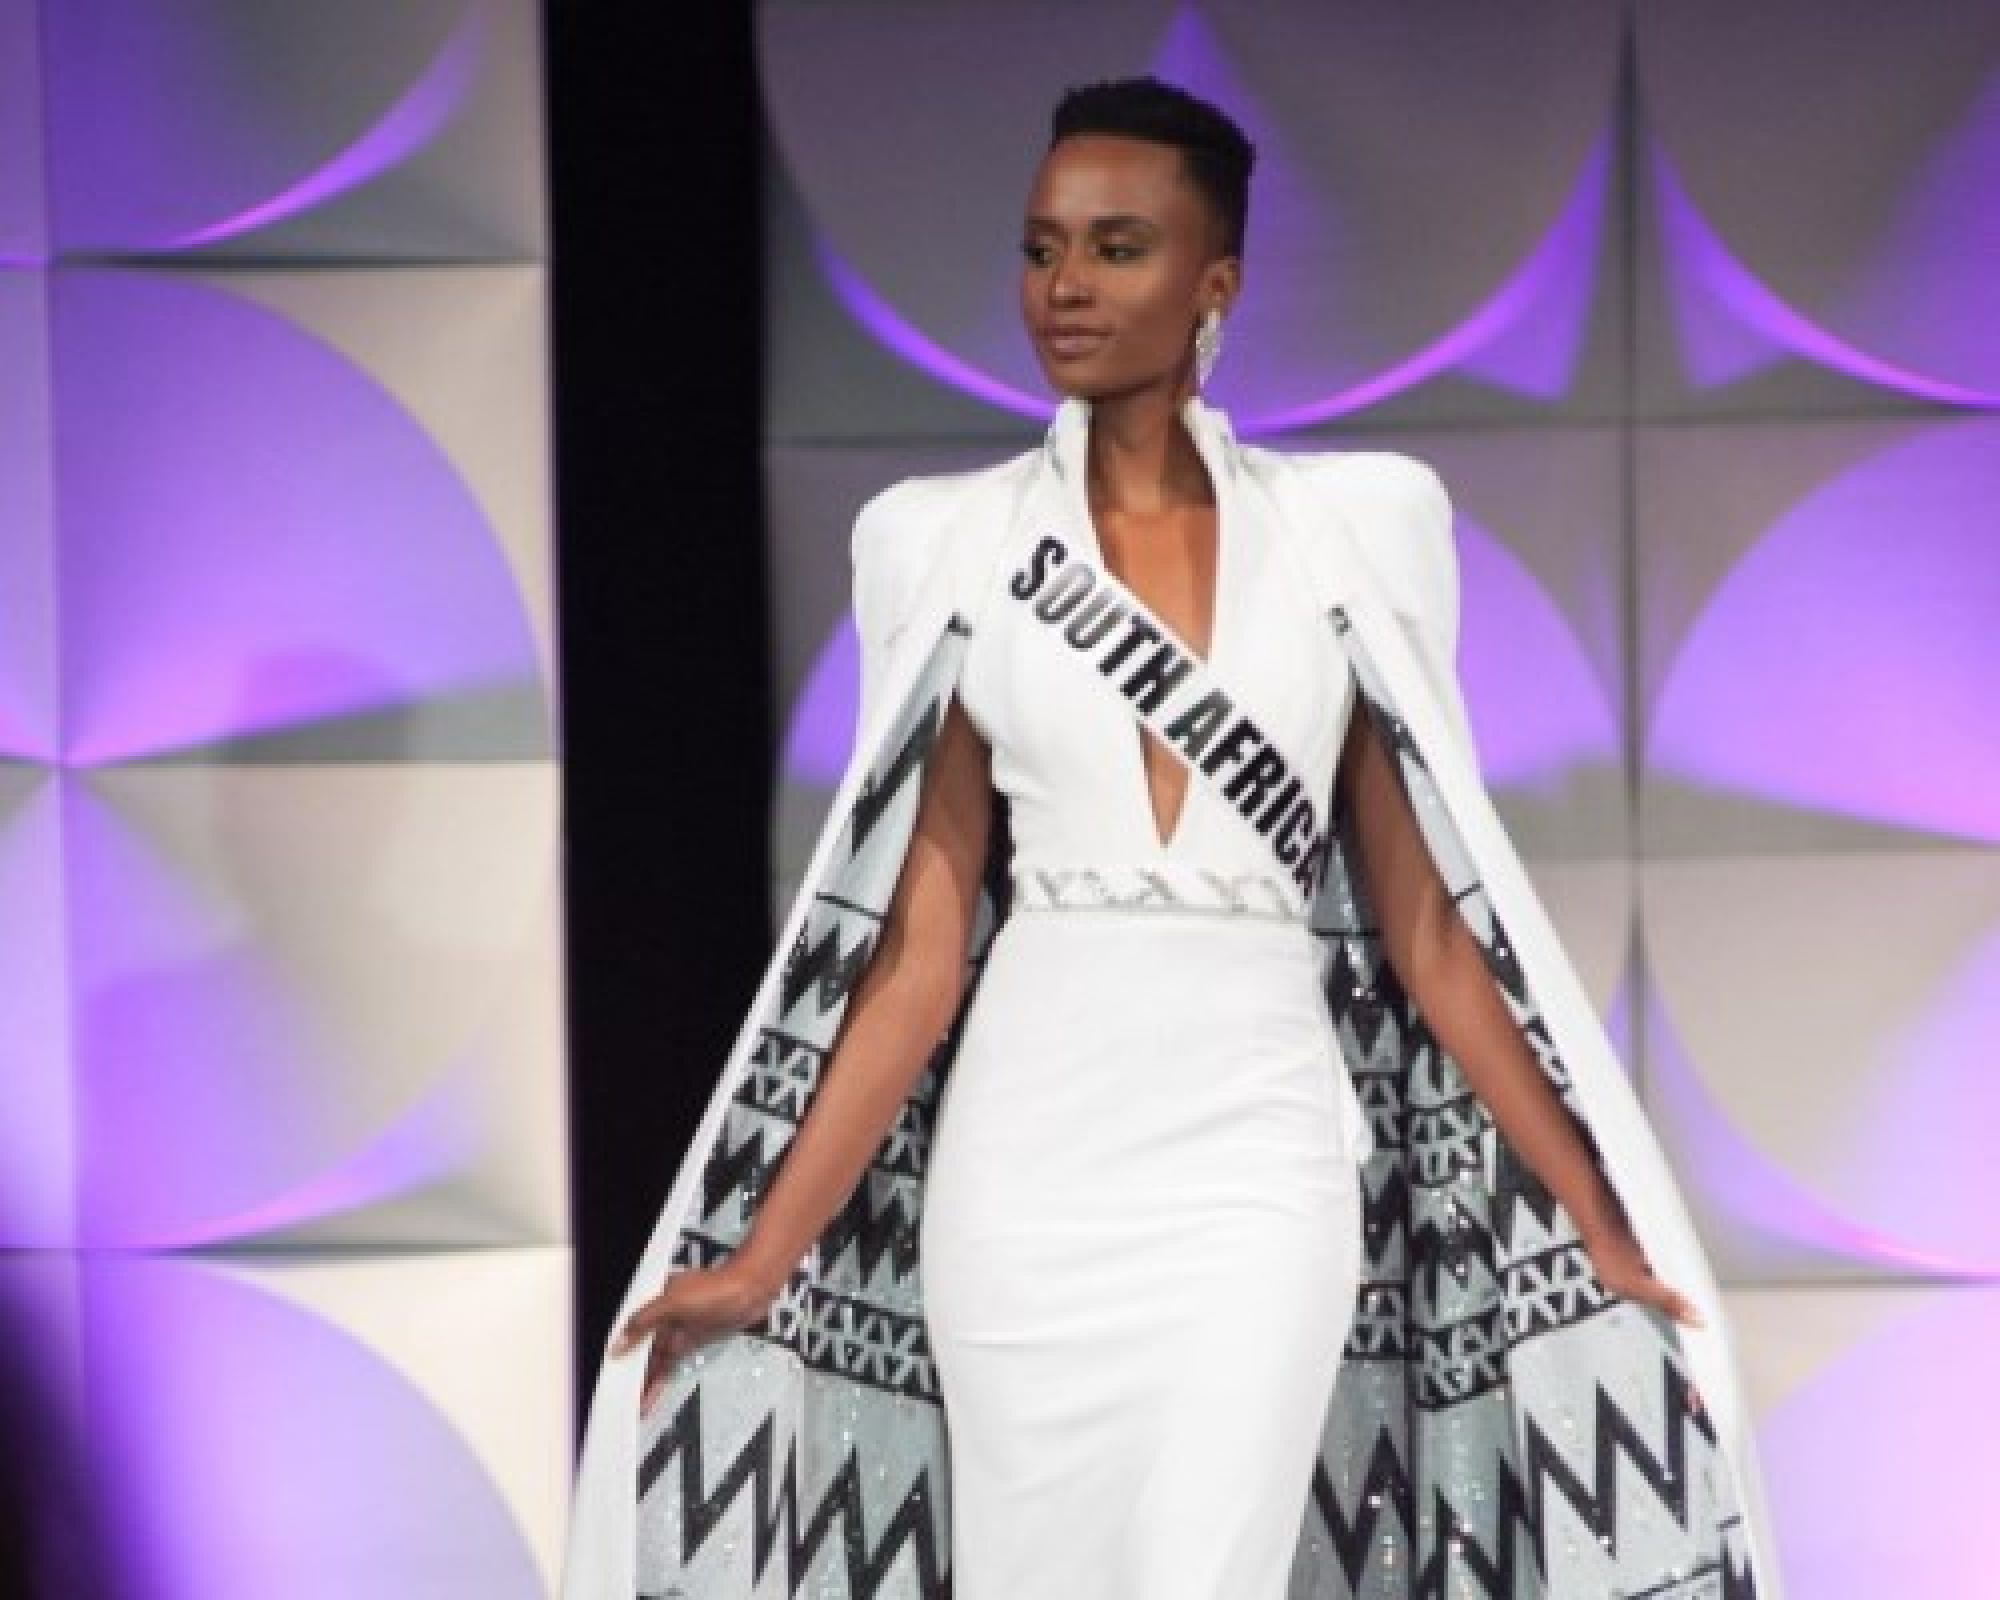 "Темнокожие девушки могут быть волшебно красивыми": Представительница ЮАР завоевала титул "Мисс Вселенная-2019"